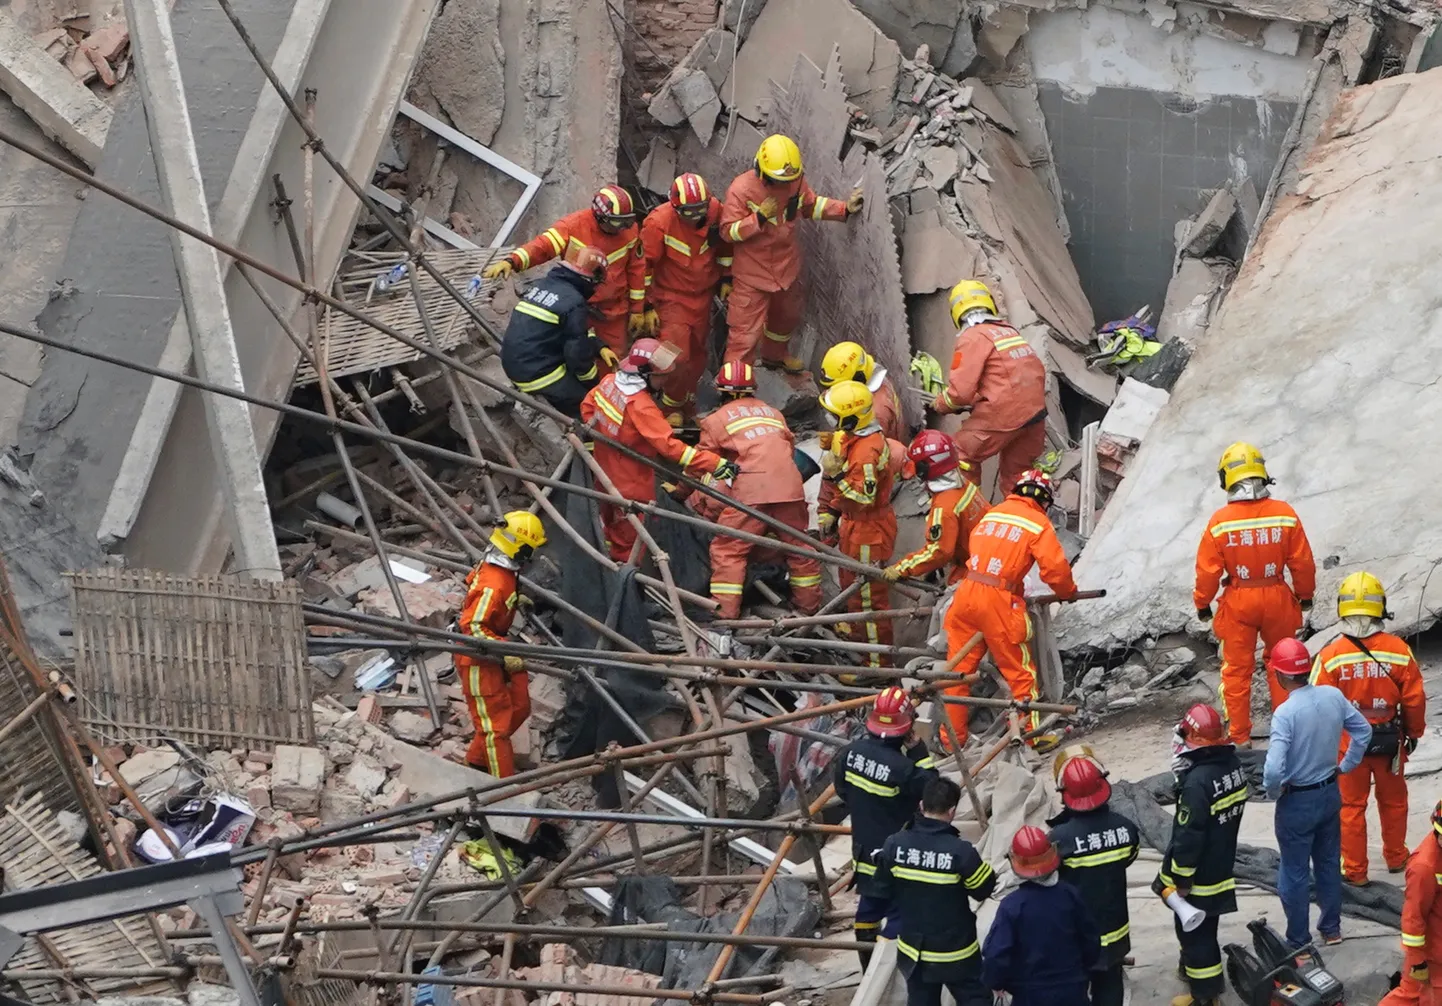 Hiina suurlinnas Shanghais varises täna kokku tööstushoone, rusudes jättis elu vähemalt viis inimest.